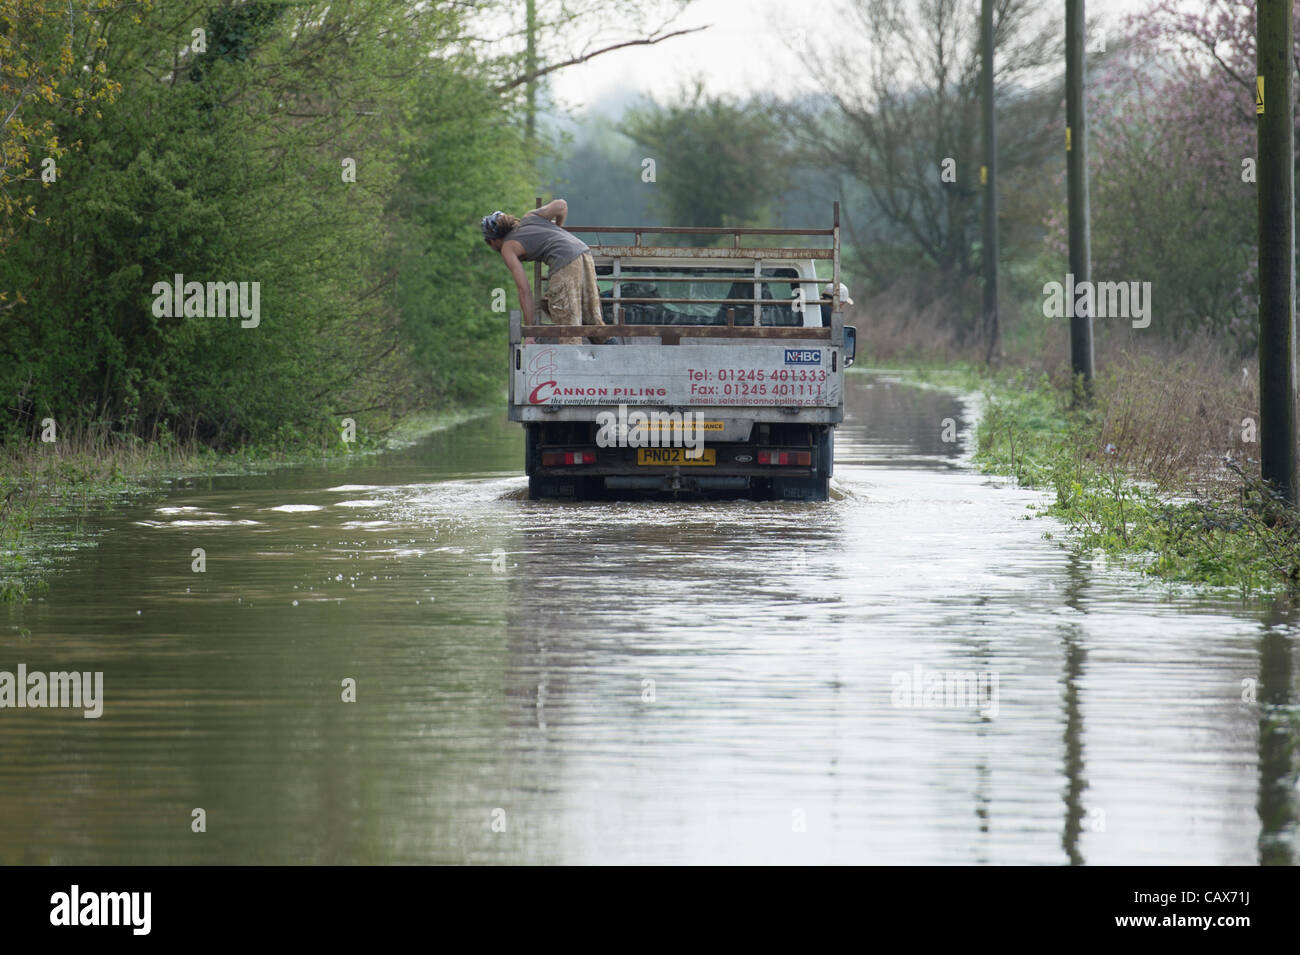 1. Mai 2012, Billericay, Essex, England. Truck fährt durch Hochwasser, wie Tiefe Fahrgast und Fahrer zu überprüfen. Starkregen führte zu lokalen Überschwemmungen, die schlimmer geworden ist, obwohl Regen durch Abfluss aus den umliegenden Feldern beendet wurde. Stockfoto